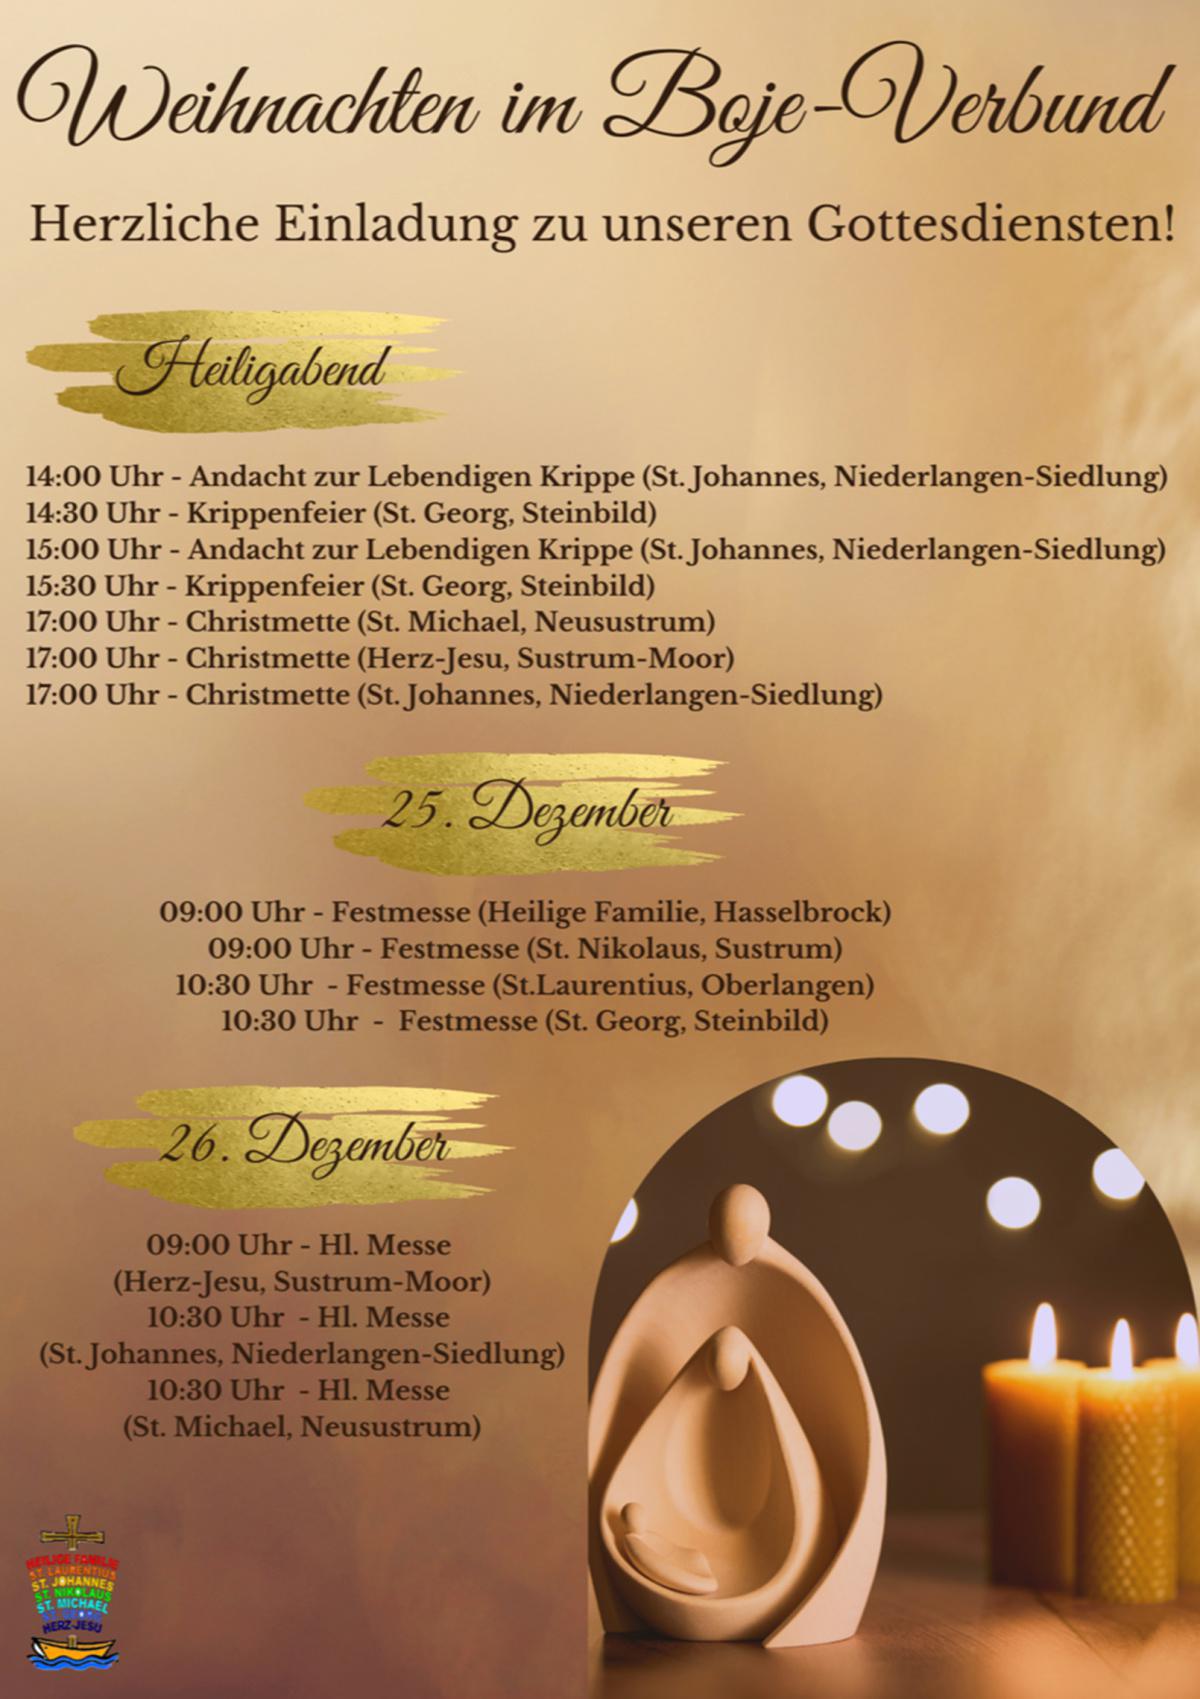 Weihnachten im Boje-Verbund - Herzliche Einladung zu unseren Gottesdiensten